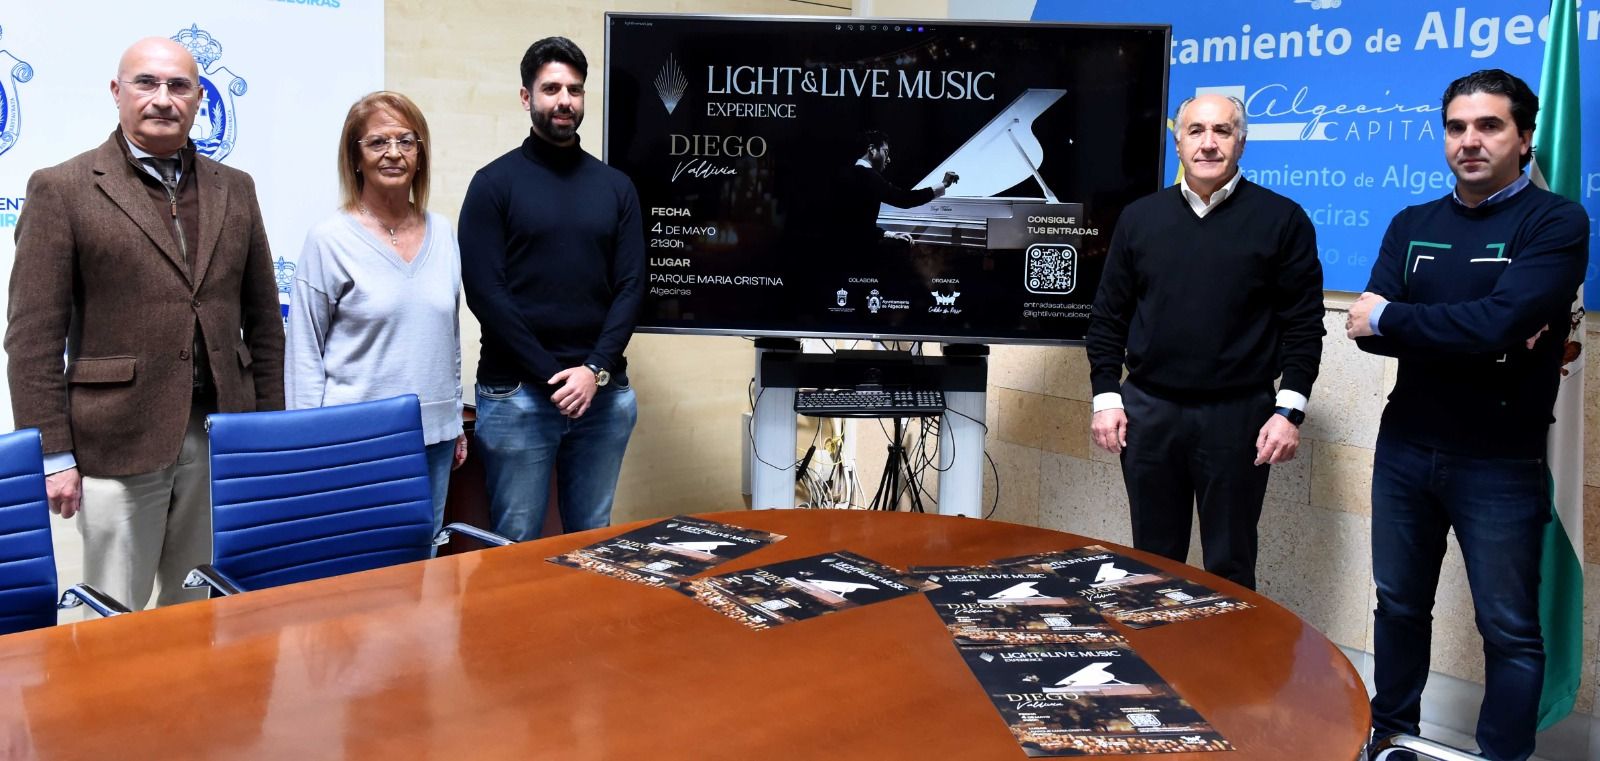 'Light & Live Music Experience': la música de Diego Valdivia a la luz de las velas. En esta imagen, acto de presentación del evento. 